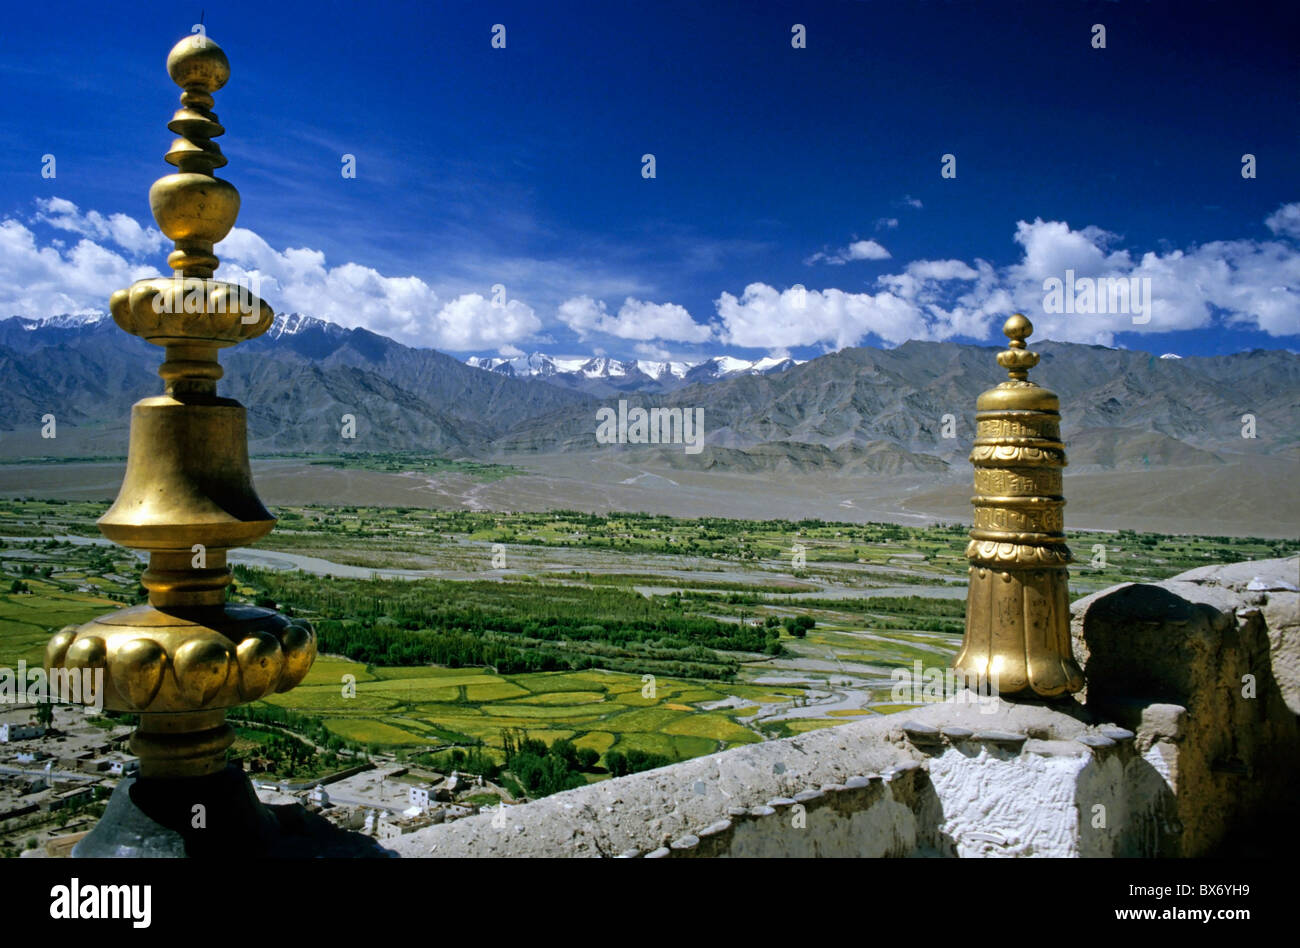 Gold-Skulpturen an Wänden des tibetischen Klosters Thikse Gompa mit malerischen Blick auf die Berge im Hintergrund, Ladakh, Indien. Stockfoto